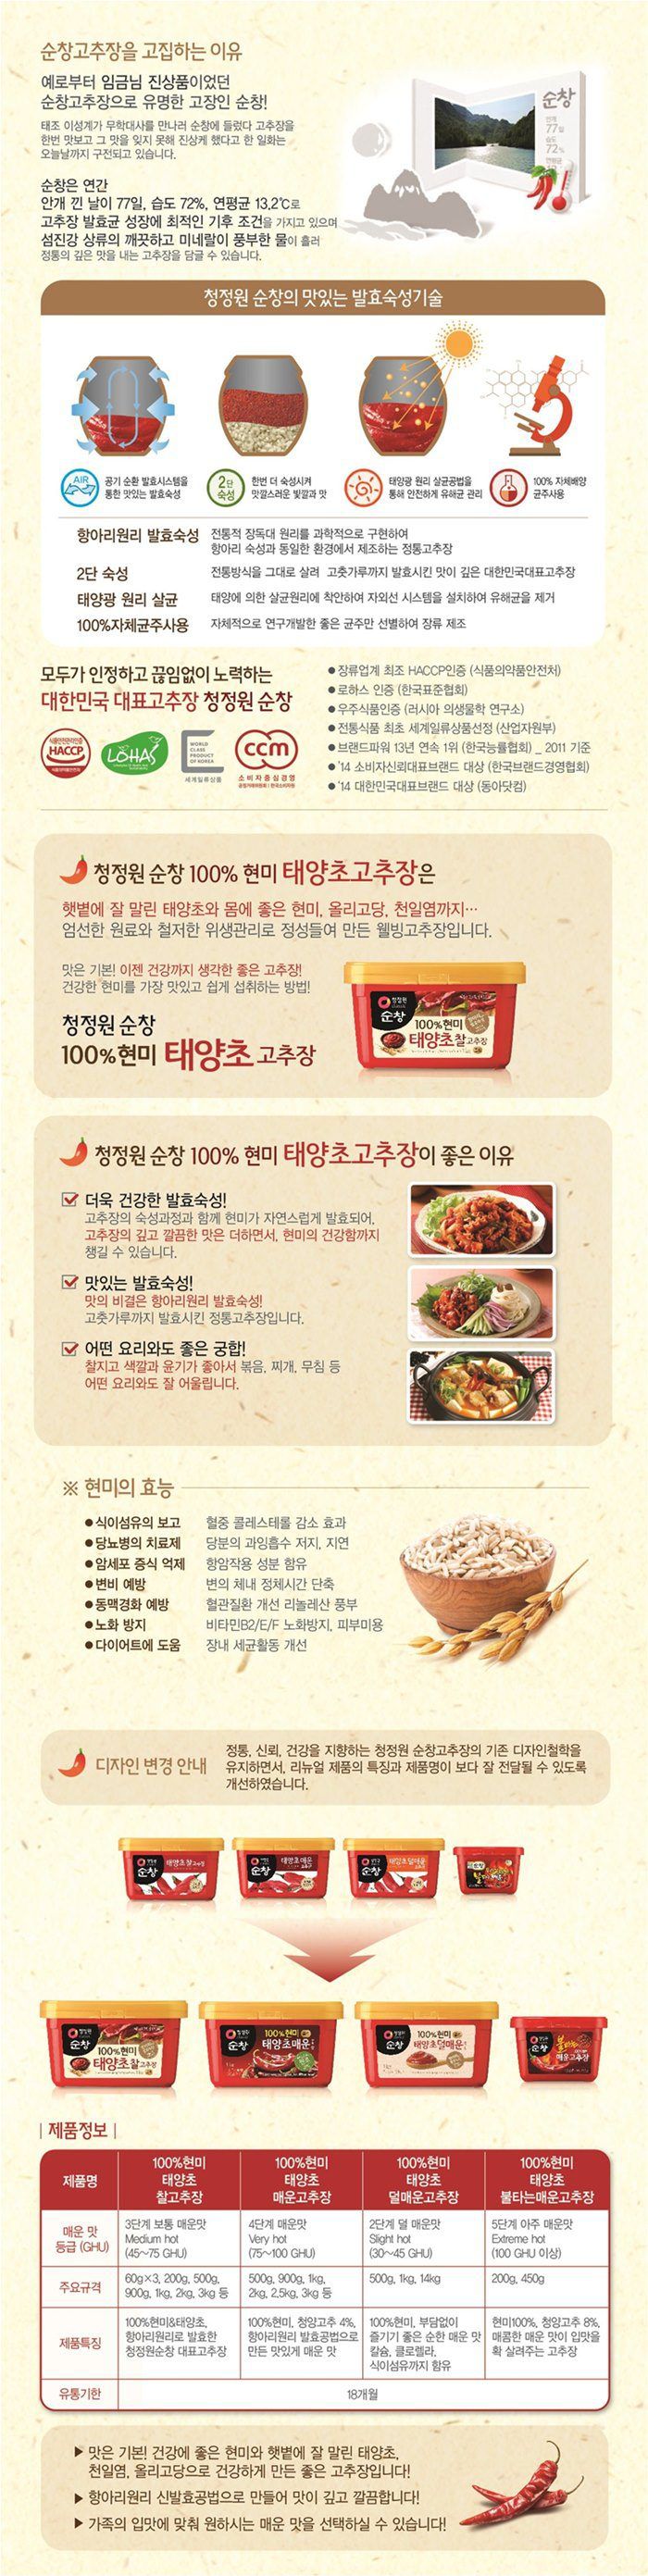 韓國食品-[CJO] Sunchang Hot Pepper Paste 1kg